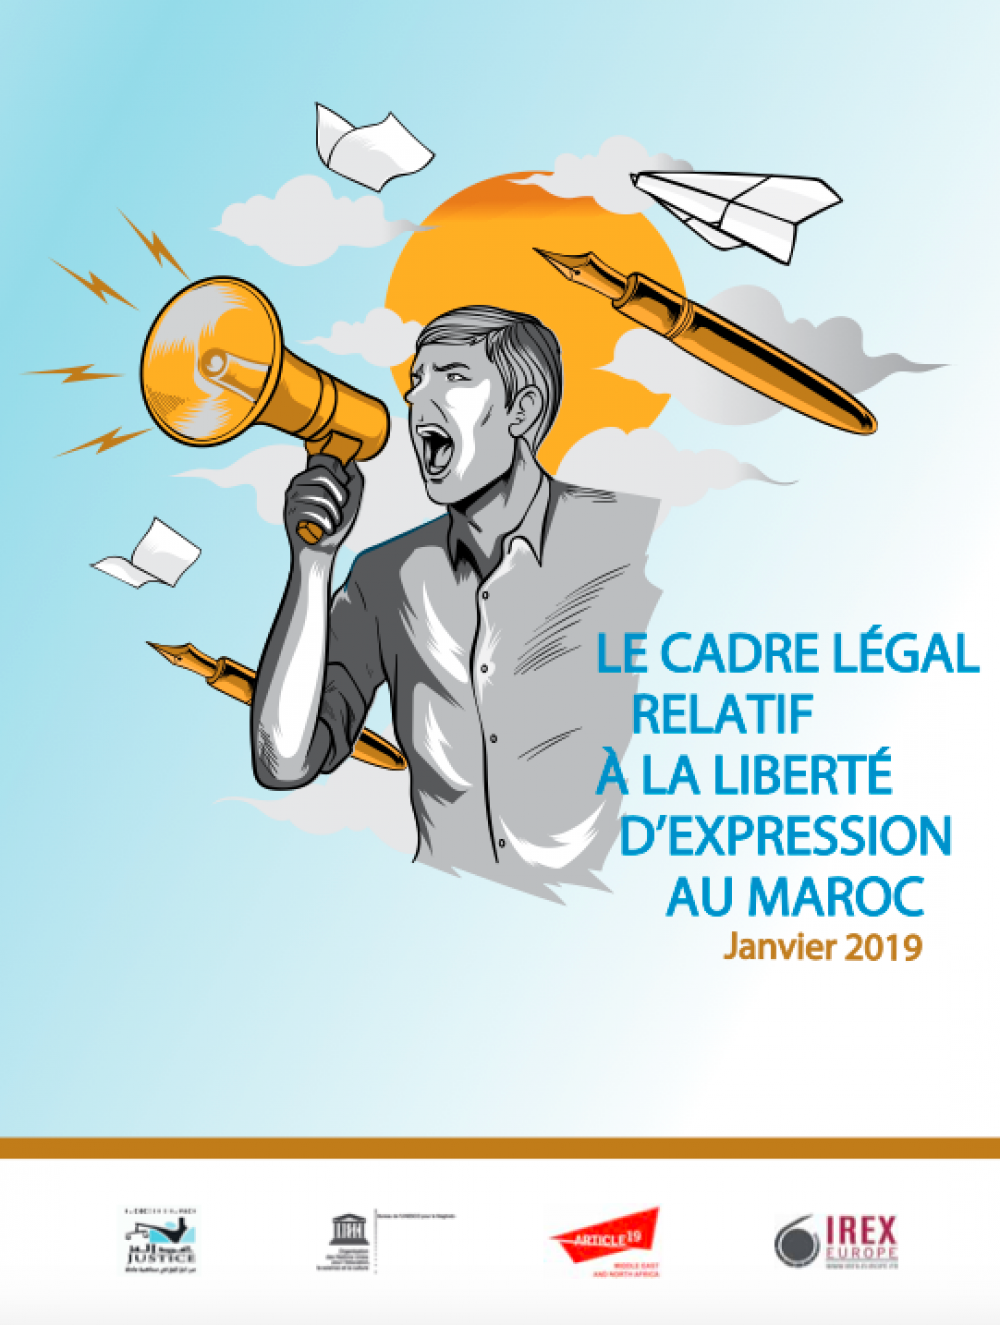 Le cadre légal relatif à la liberté d’expression au Maroc